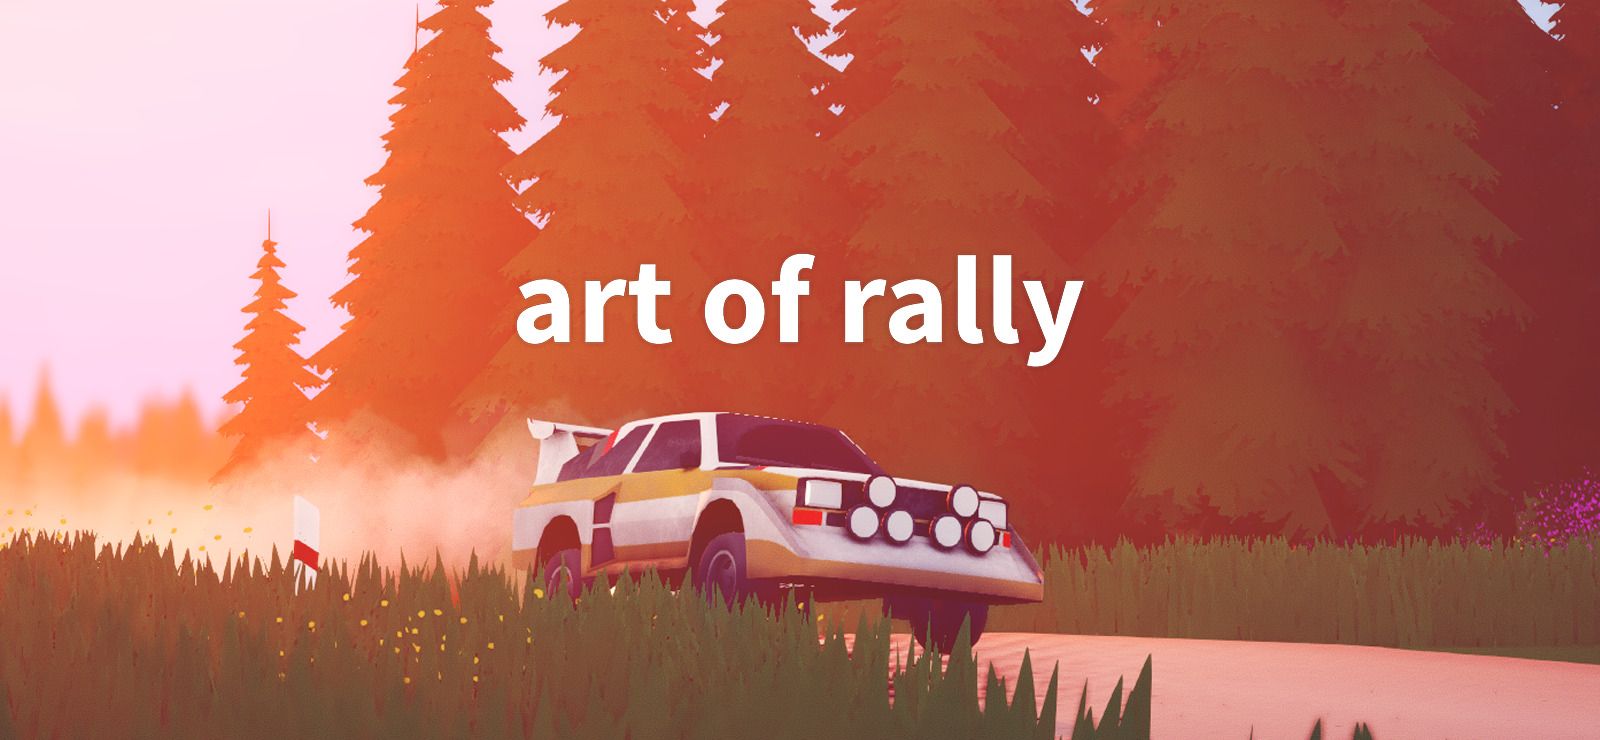 10% art of rally on GOG.com